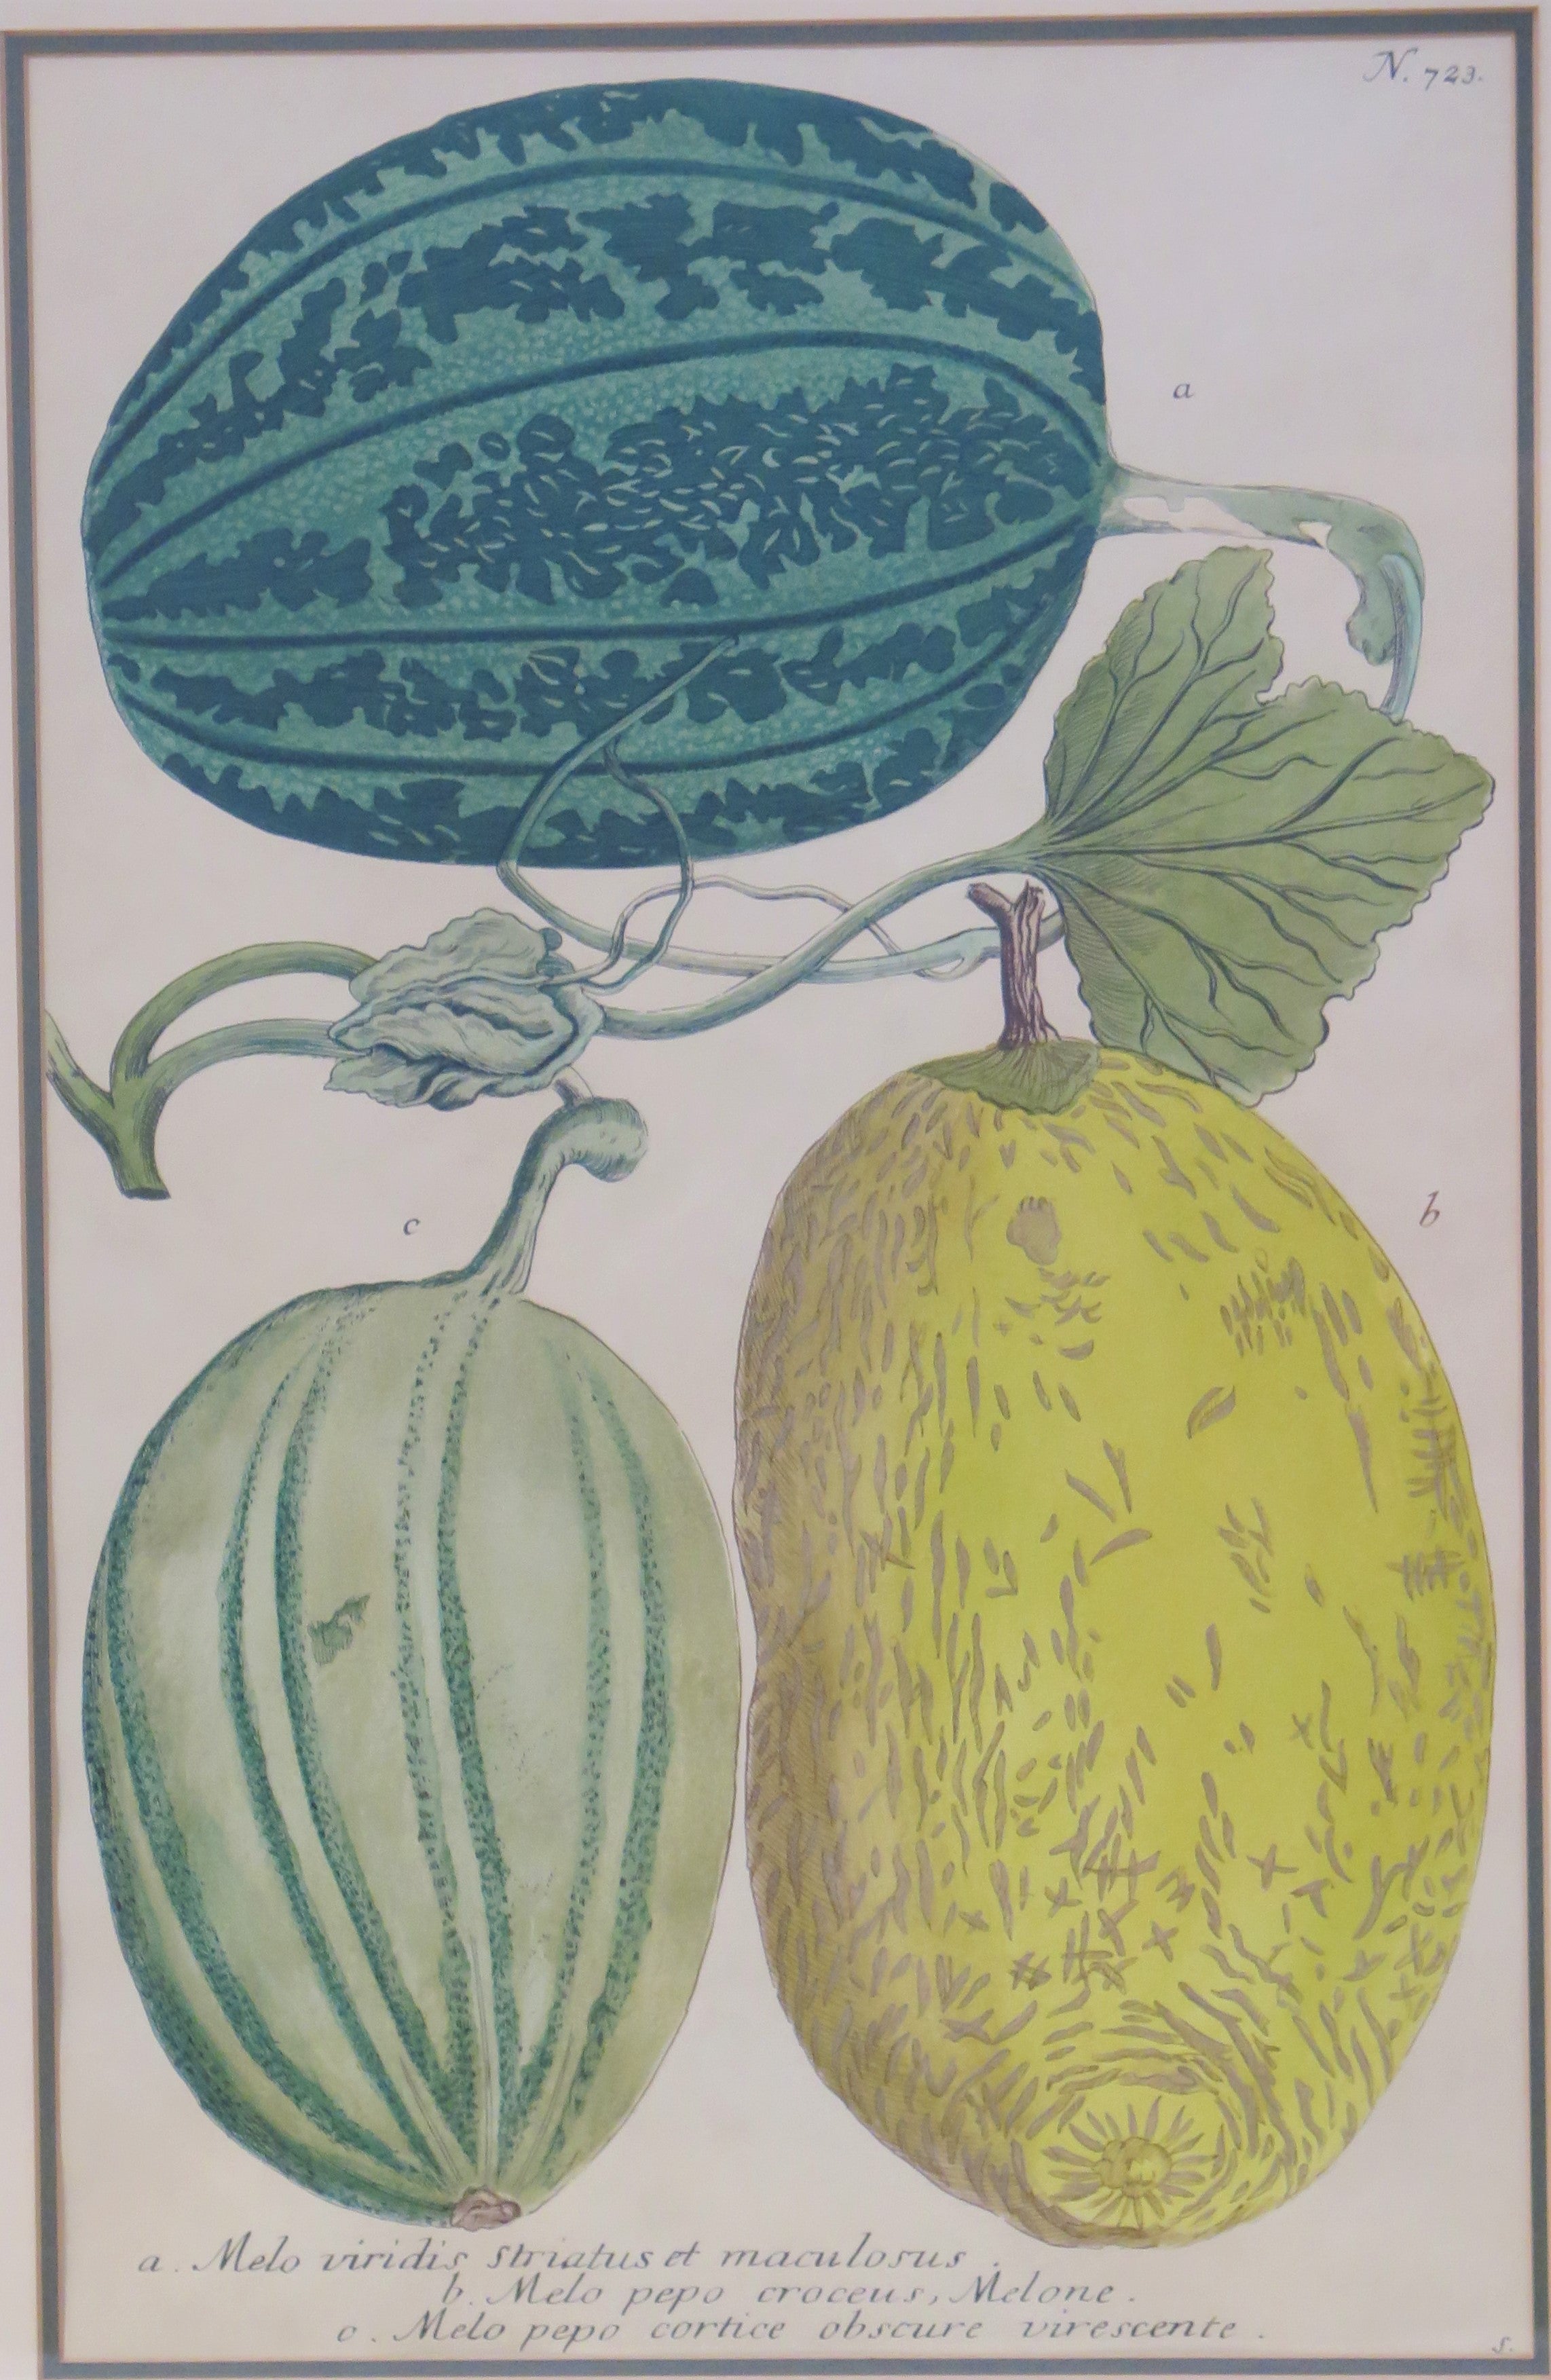 MELONS by Georg Dionysius Ehret (German, 1708-1770)